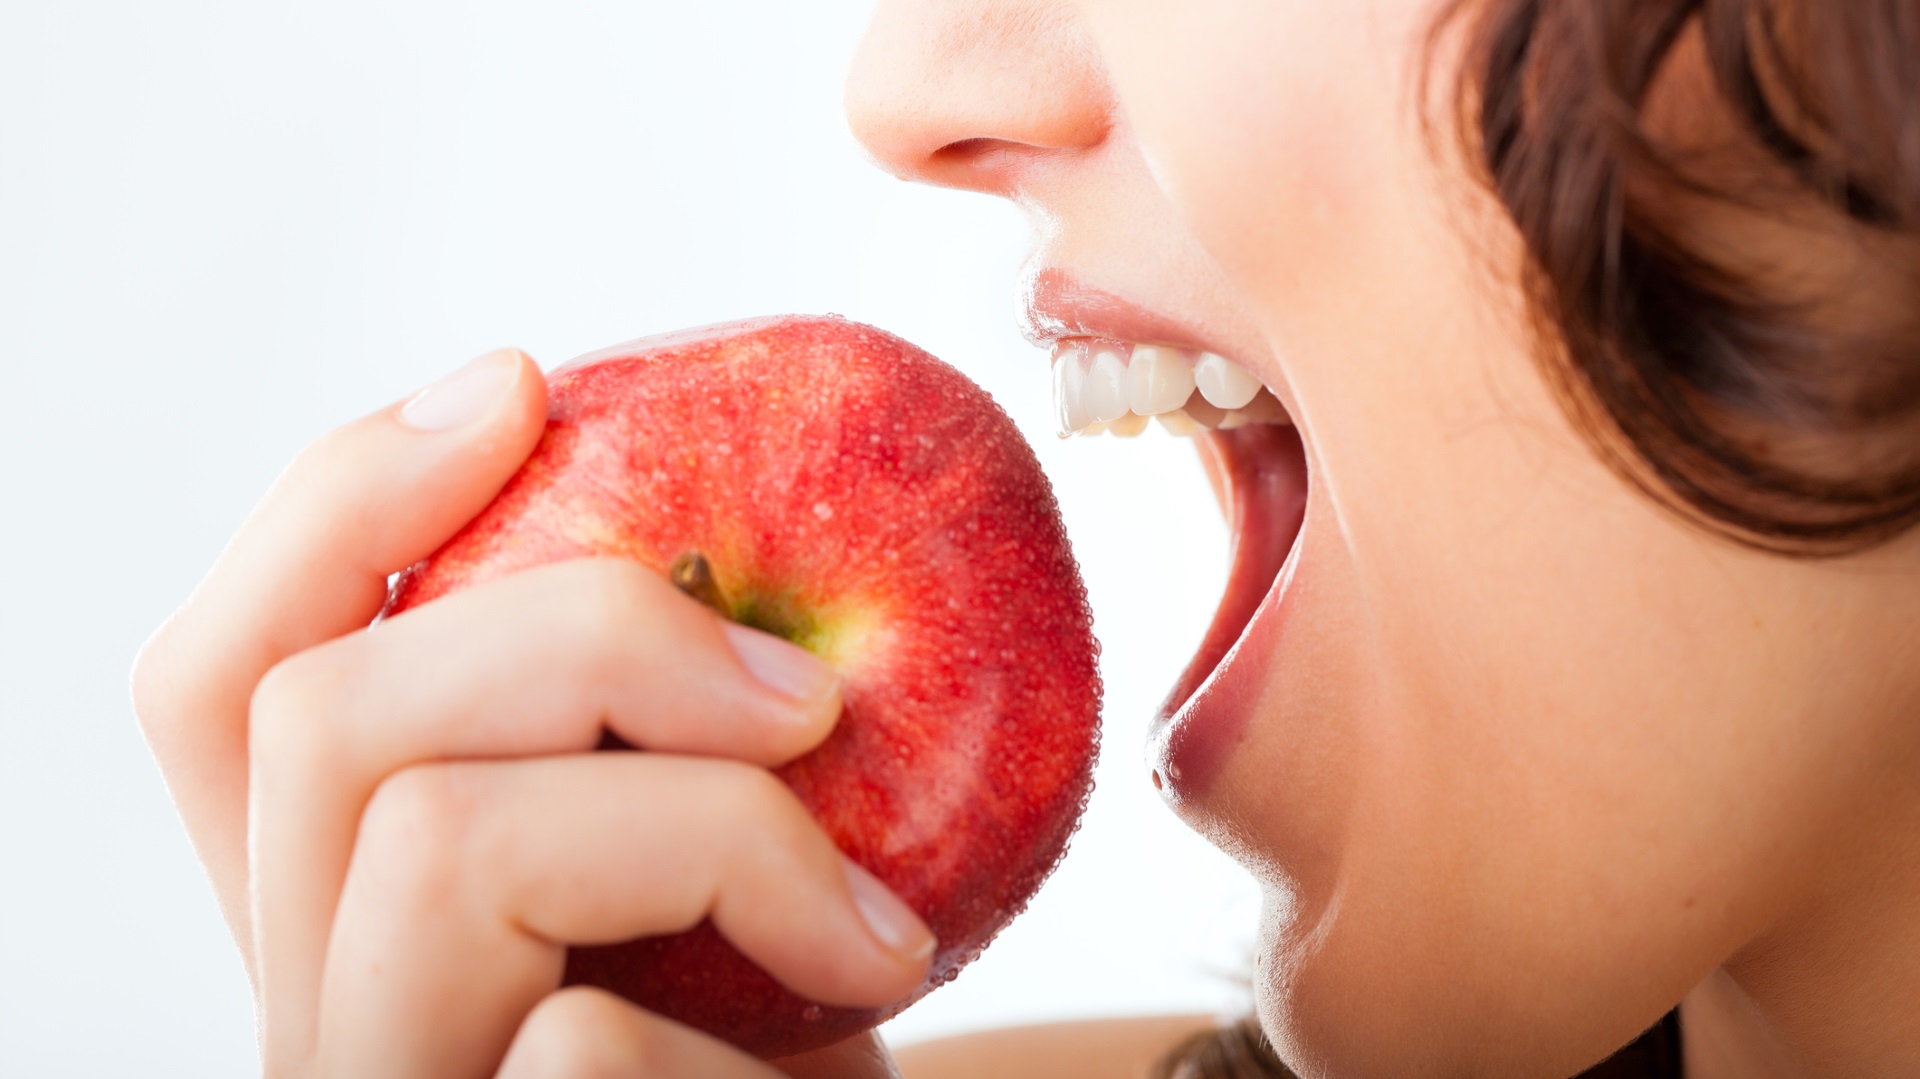 <p><strong>Може да увредите зъбите си</strong></p>

<p>Тъй като ябълките са кисели, яденето на твърде много от тях може да увреди зъбите ви повече от някои газирани напитки. Това обаче може да се избегне, ако се дъвче със задните зъби или ако се яде заедно с друга храна като лека закуска. Ако хапвате по една ябълка на ден, изобщо няма нужда да се тревожите за зъбите си.</p>